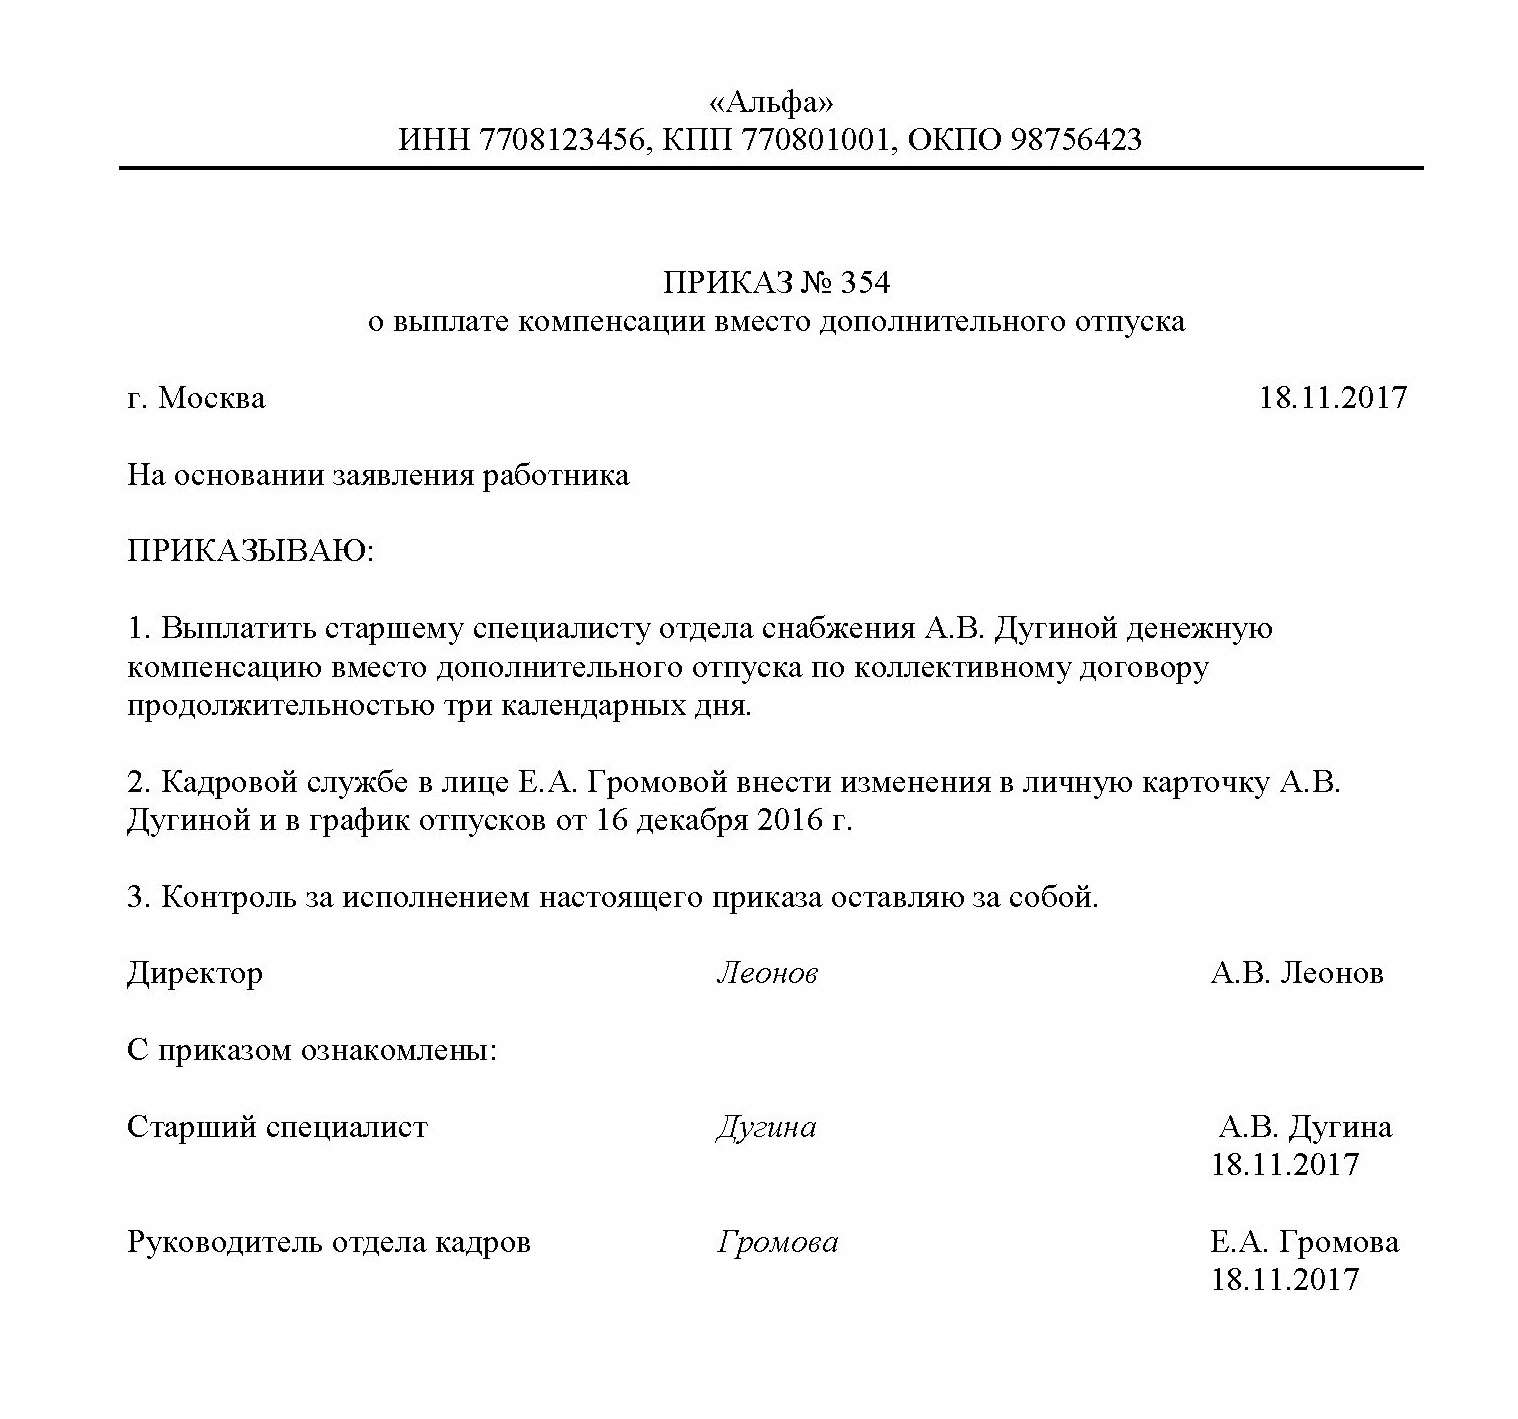 Как поменять водительское удостоверение украины на российское крым